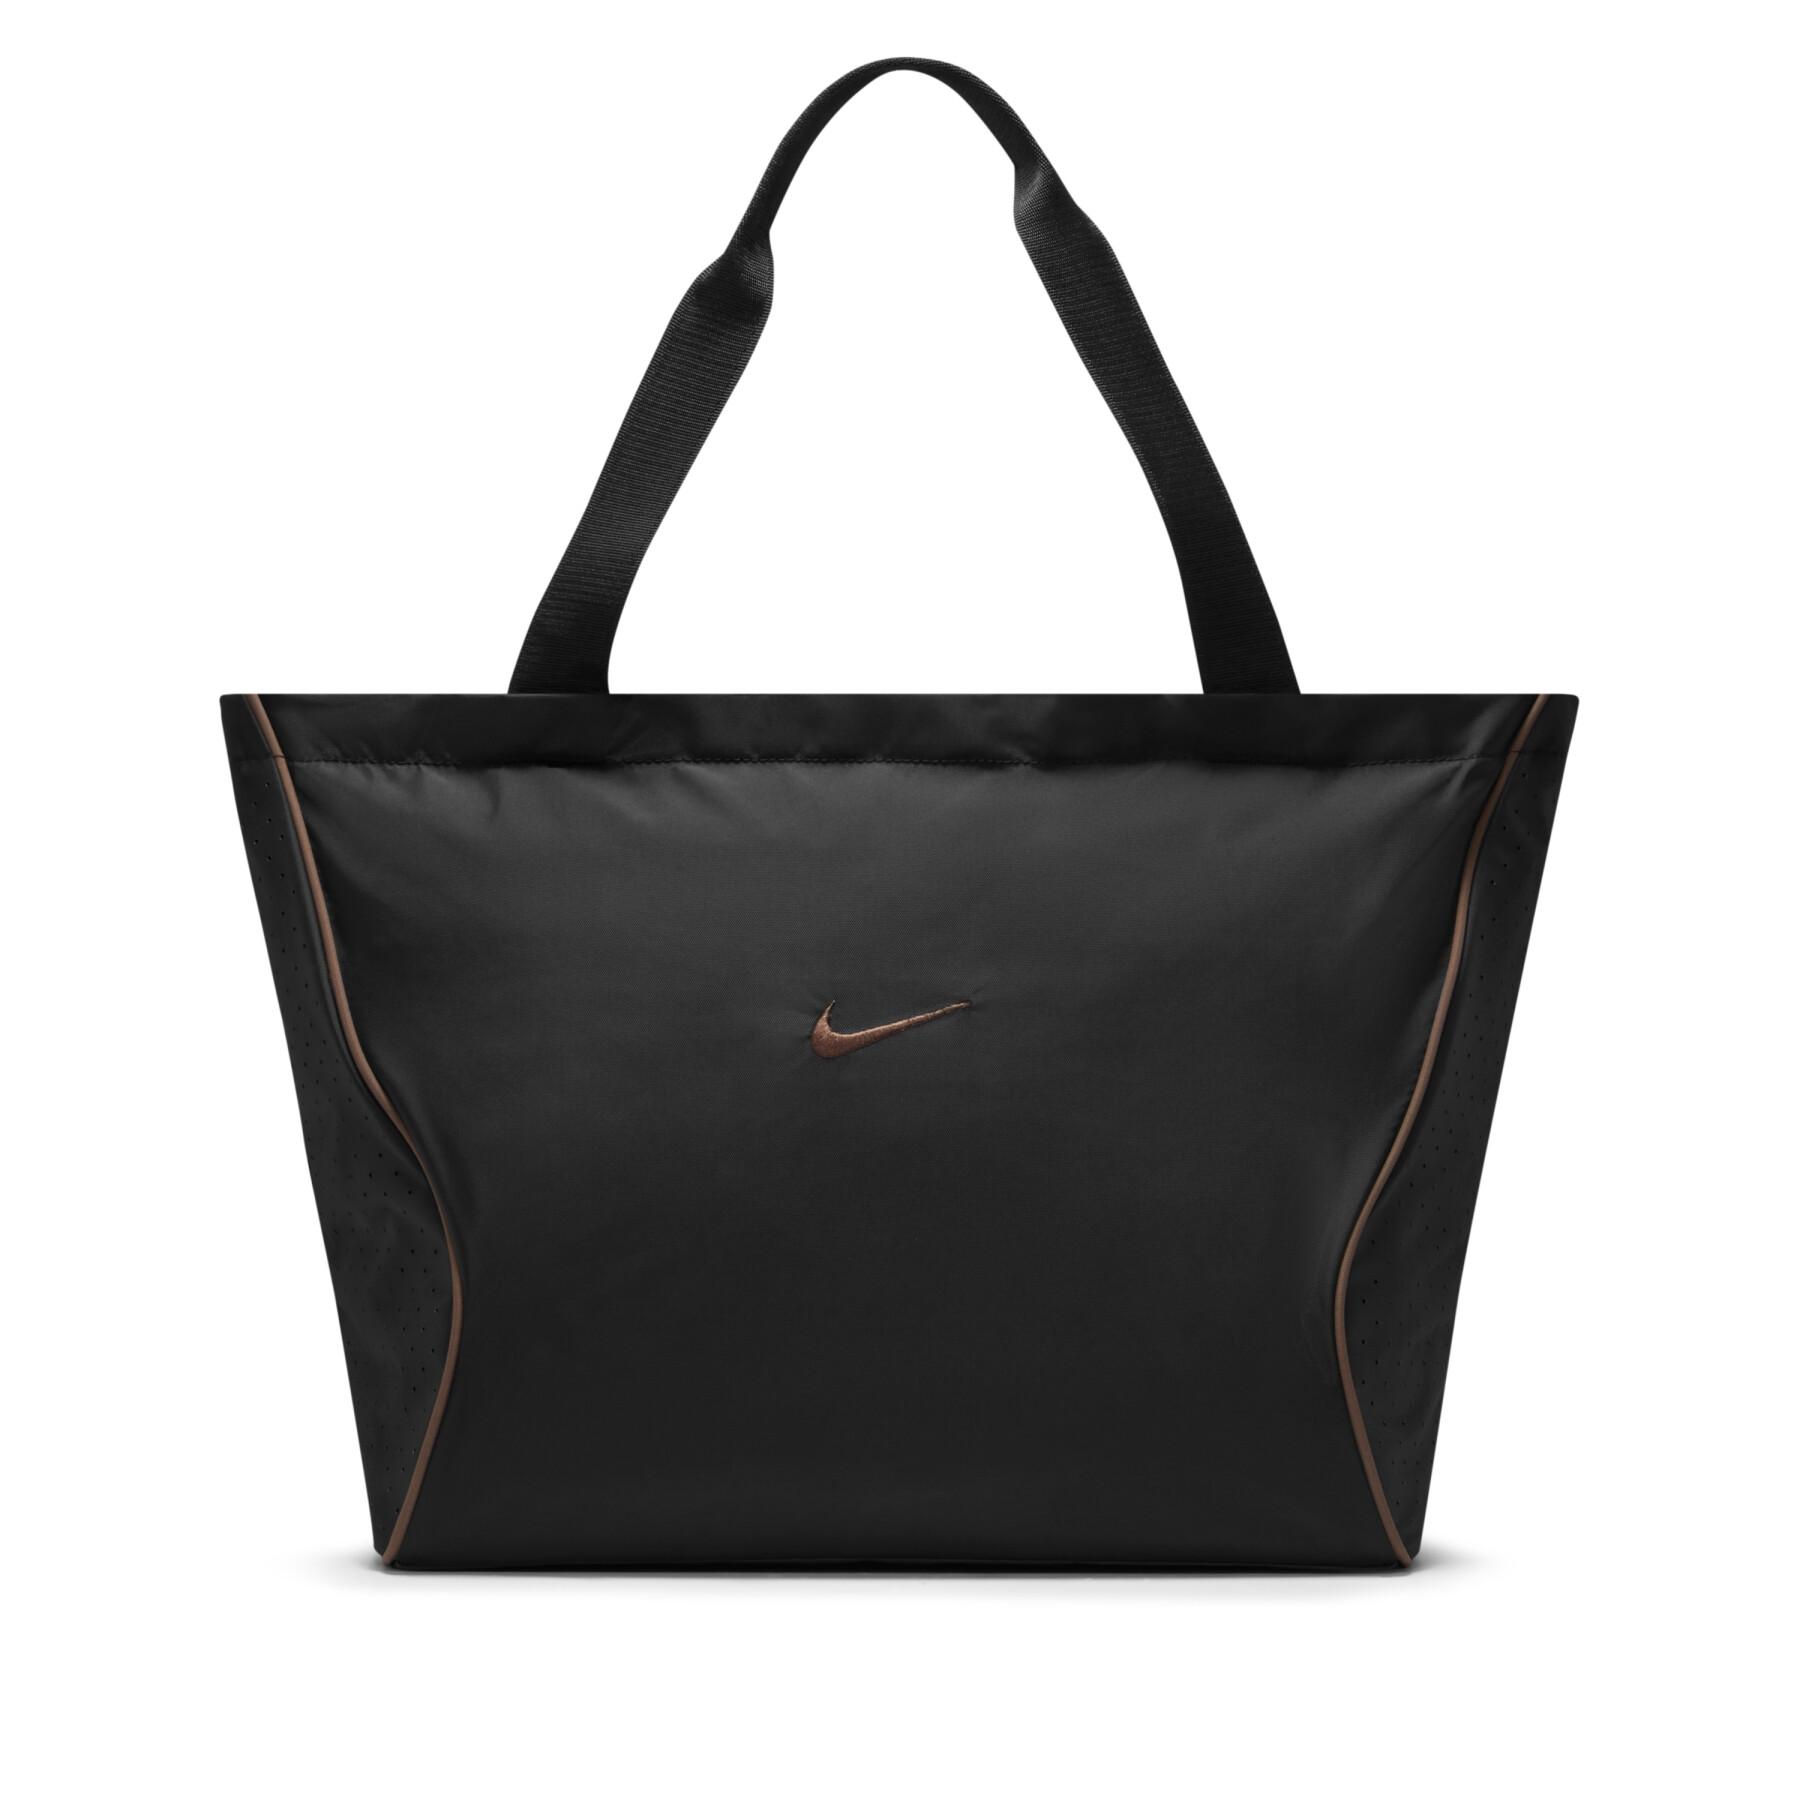 Bärbar väska Nike Sportswear Essentials